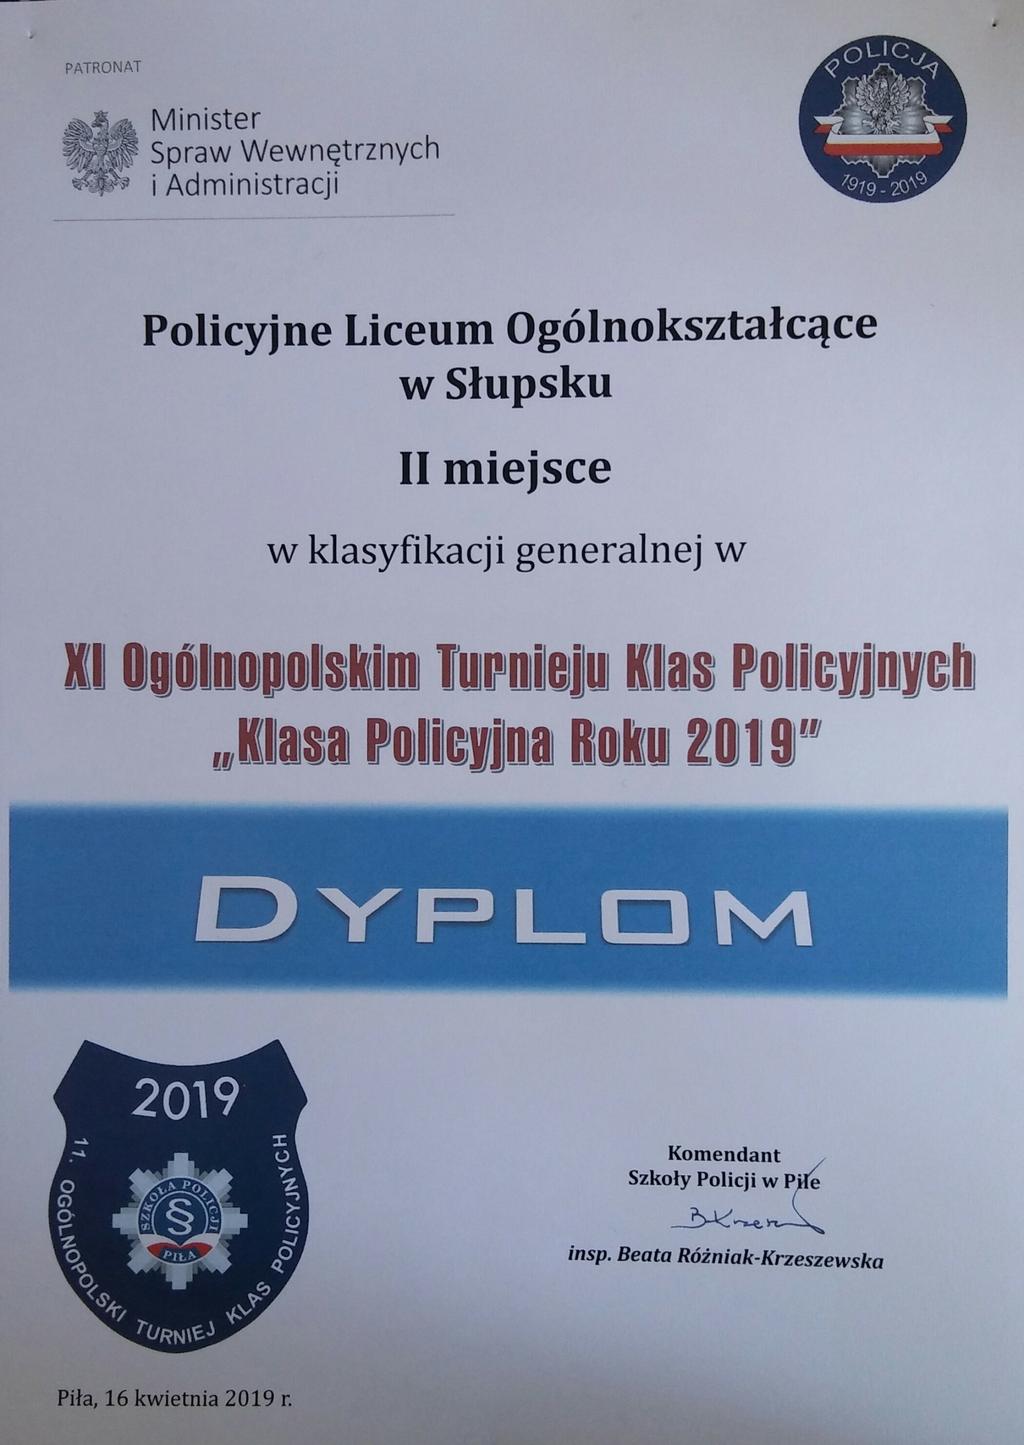 Dyplom Reprezentacja 2019 Skład reprezentacji to Daria Welzandt, Paweł Pszeniczny, Dawid Wiśniewski i Maciej Zierke.